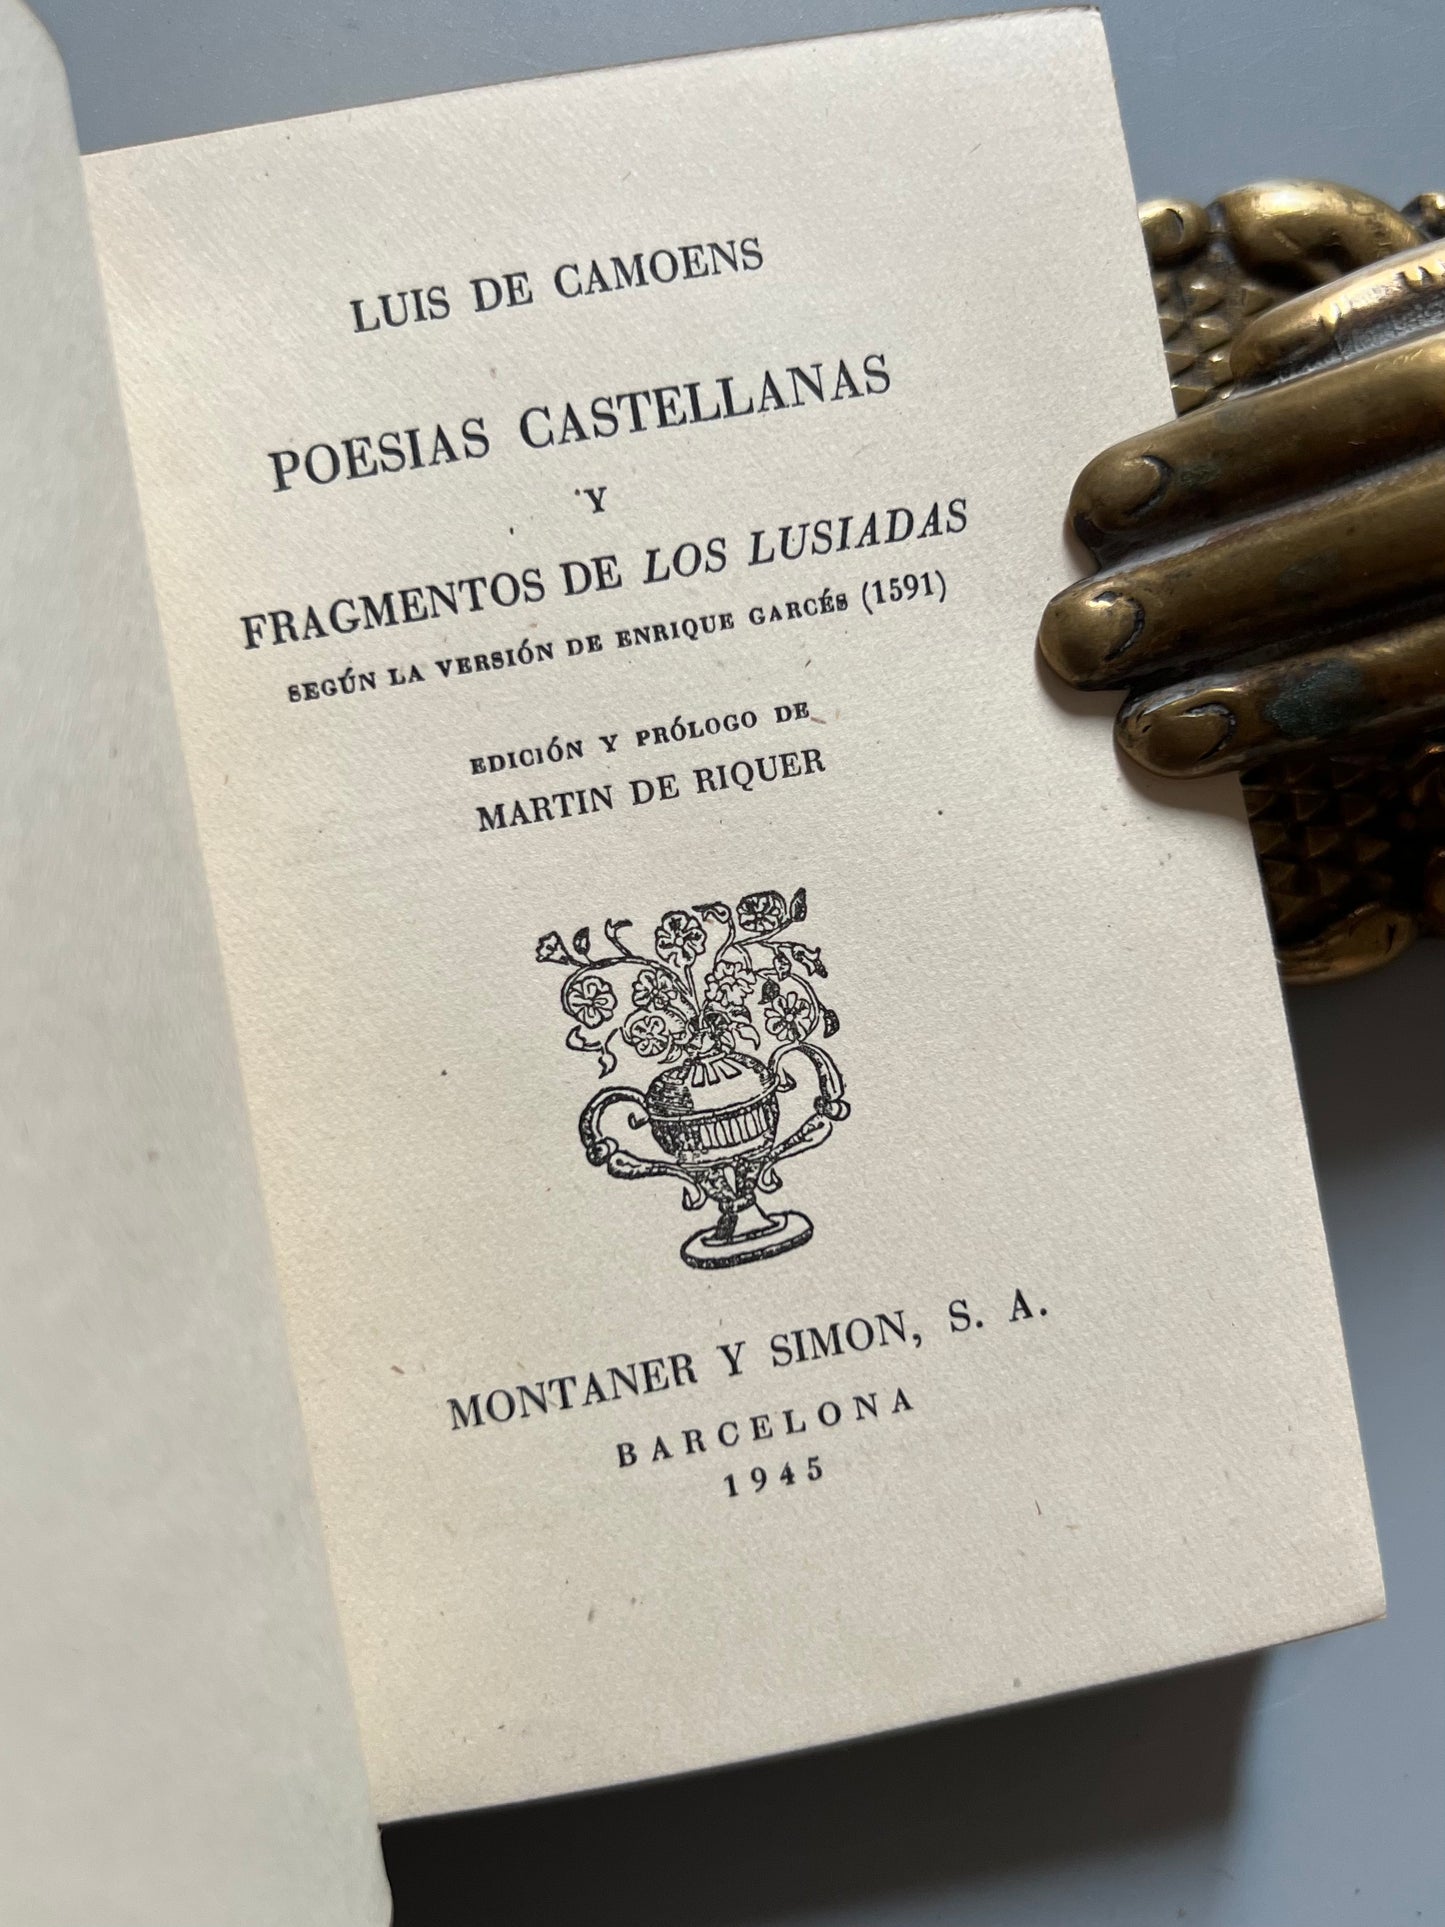 Poesías castellanas y fragmentos de Los Lusíadas, Luis de Camoens - Montaner y Simón, 1945